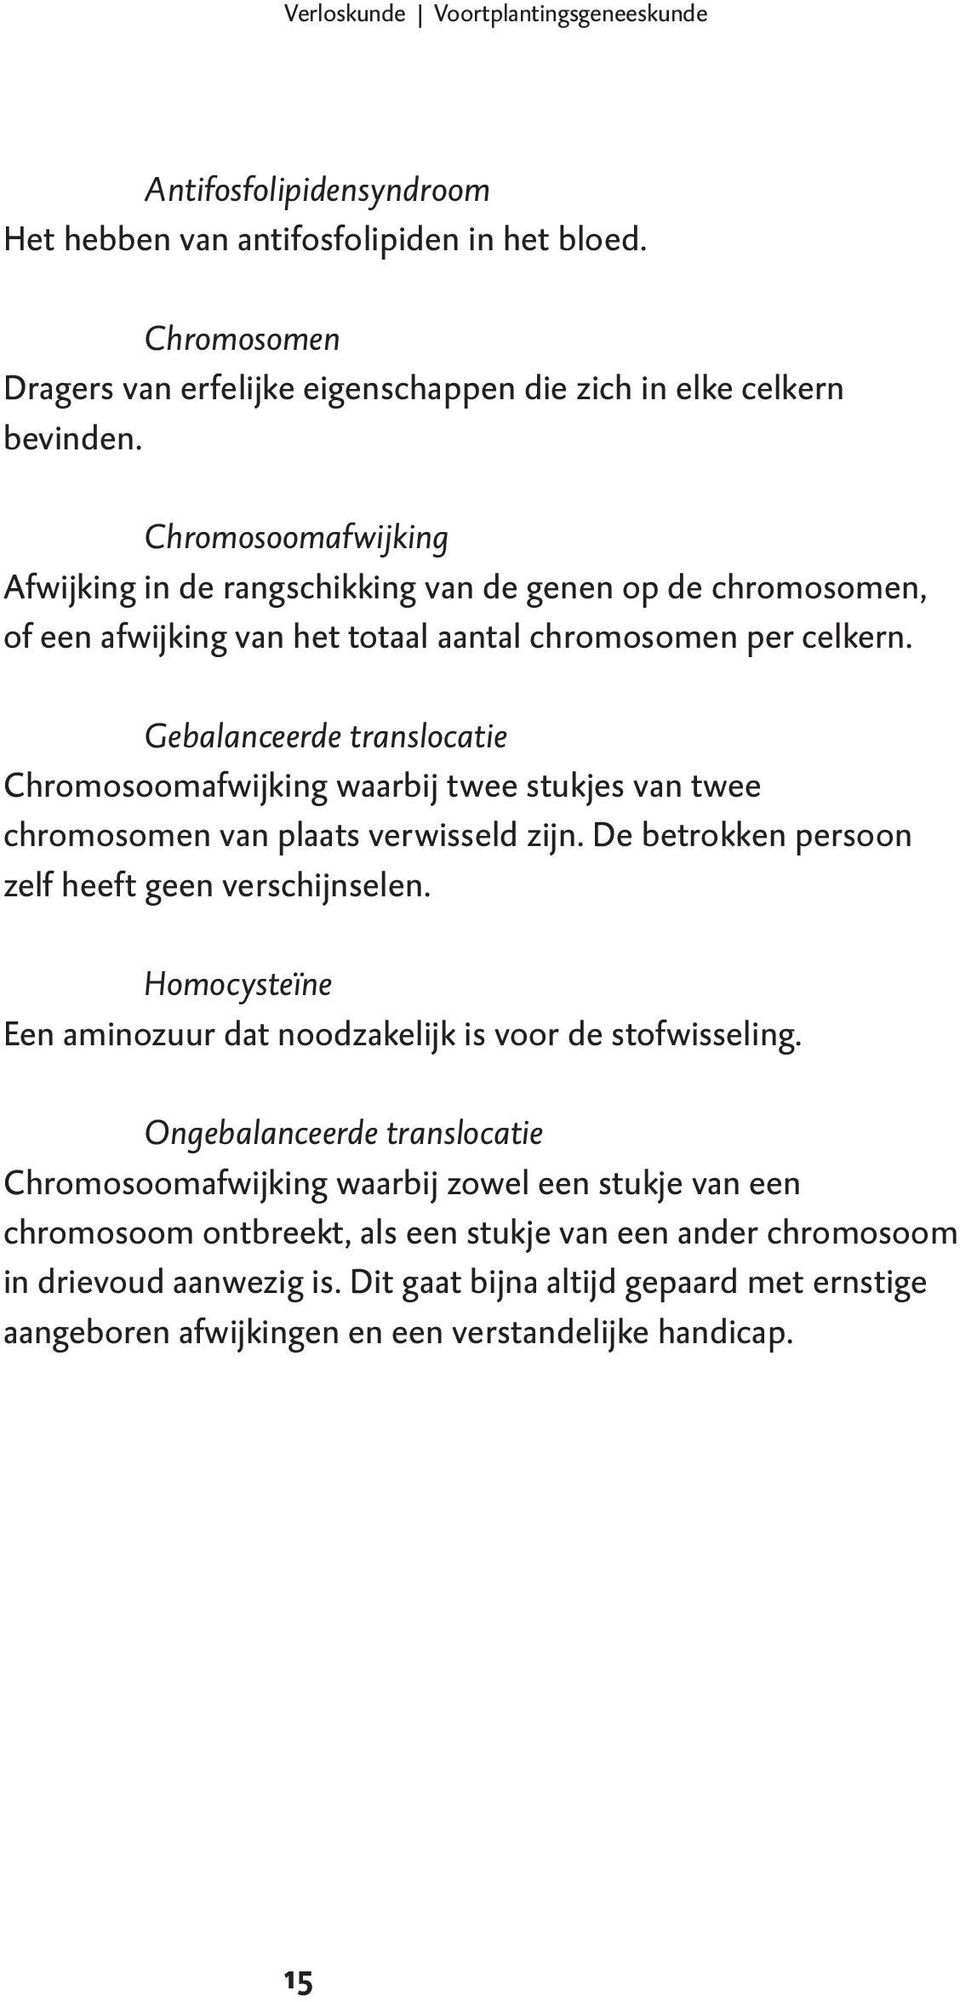 Gebalanceerde translocatie Chromosoomafwijking waarbij twee stukjes van twee chromosomen van plaats verwisseld zijn. De betrokken persoon zelf heeft geen verschijnselen.